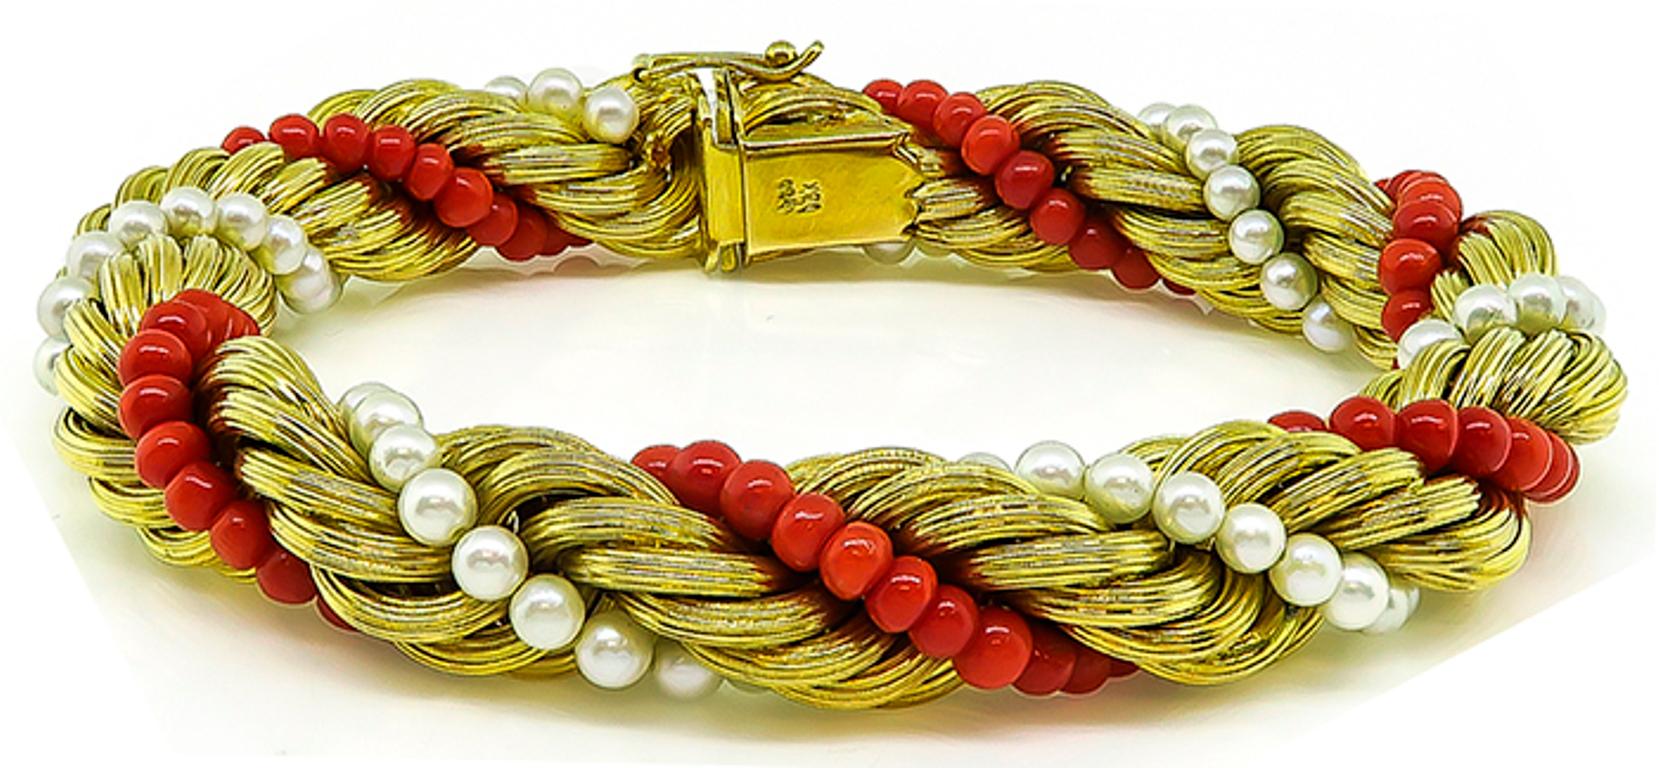 Cet élégant bracelet en or jaune 18k des années 1960 présente un motif de corde torsadée accentué par de jolies perles et coraux. Le bracelet mesure 11 mm de large et 8 pouces de long. 
Elle est estampillée 750 18K et pèse 46,1 grammes.
Inventaire